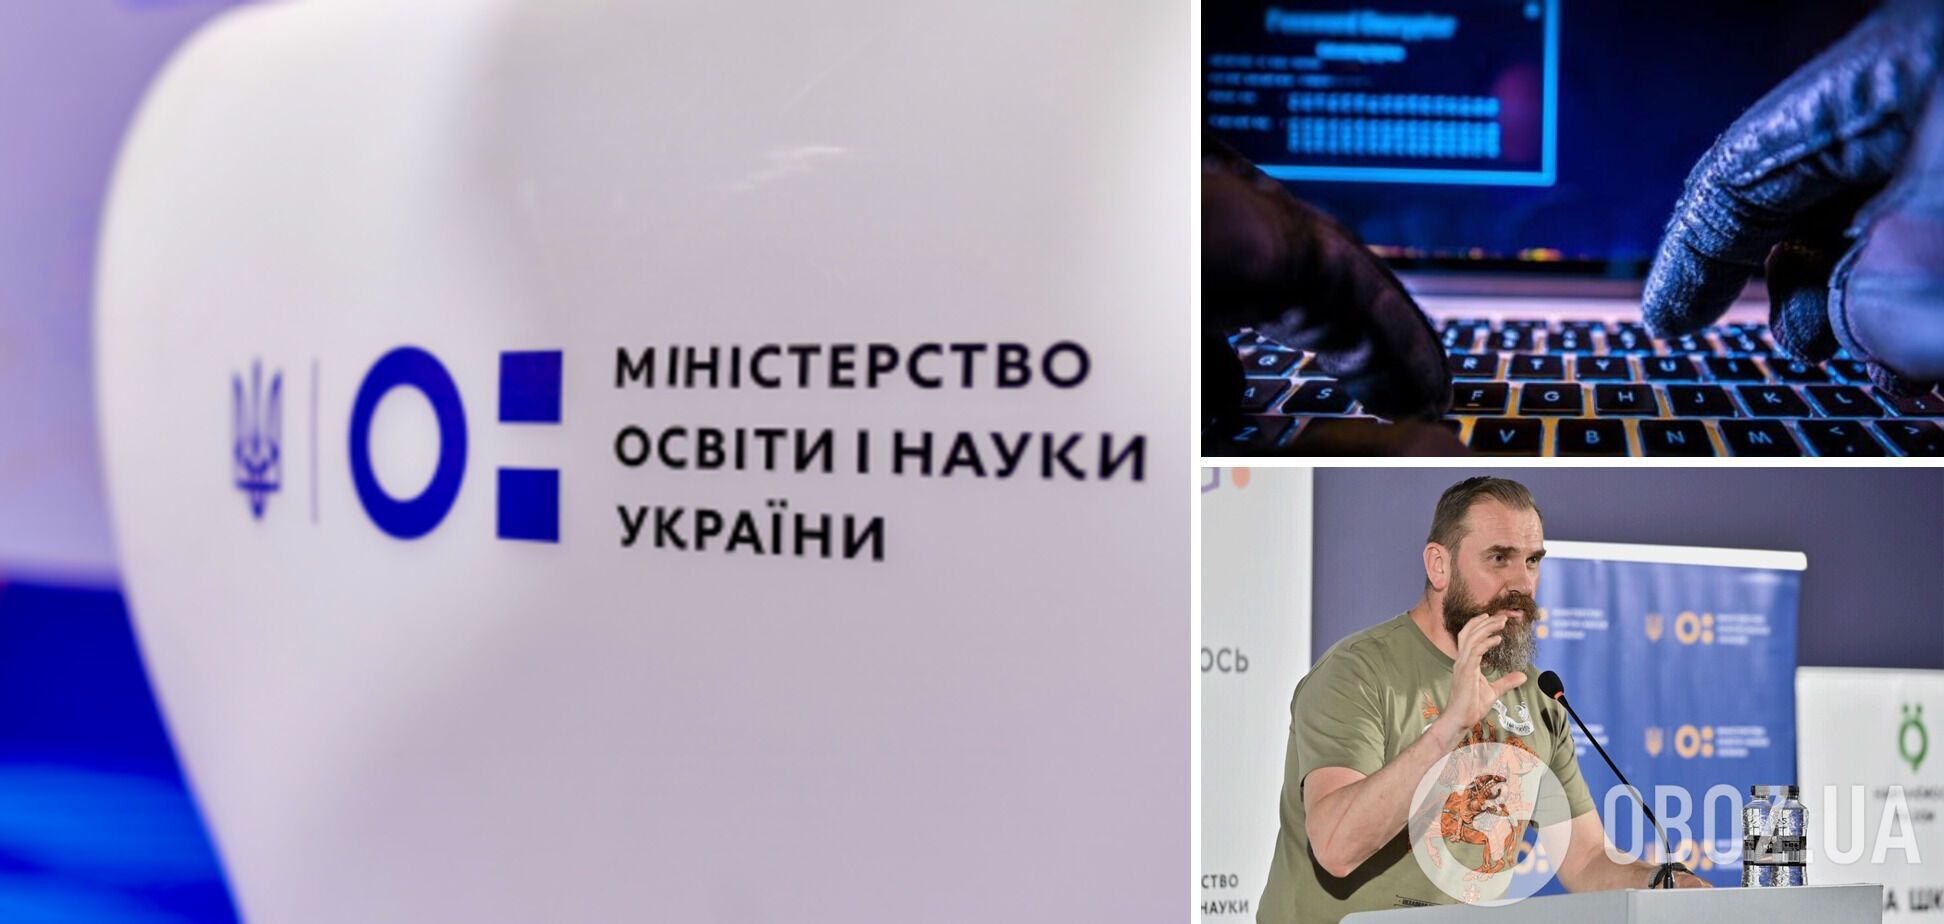 Сайт Міносвіти України зупинив роботу через кібератаку РФ
